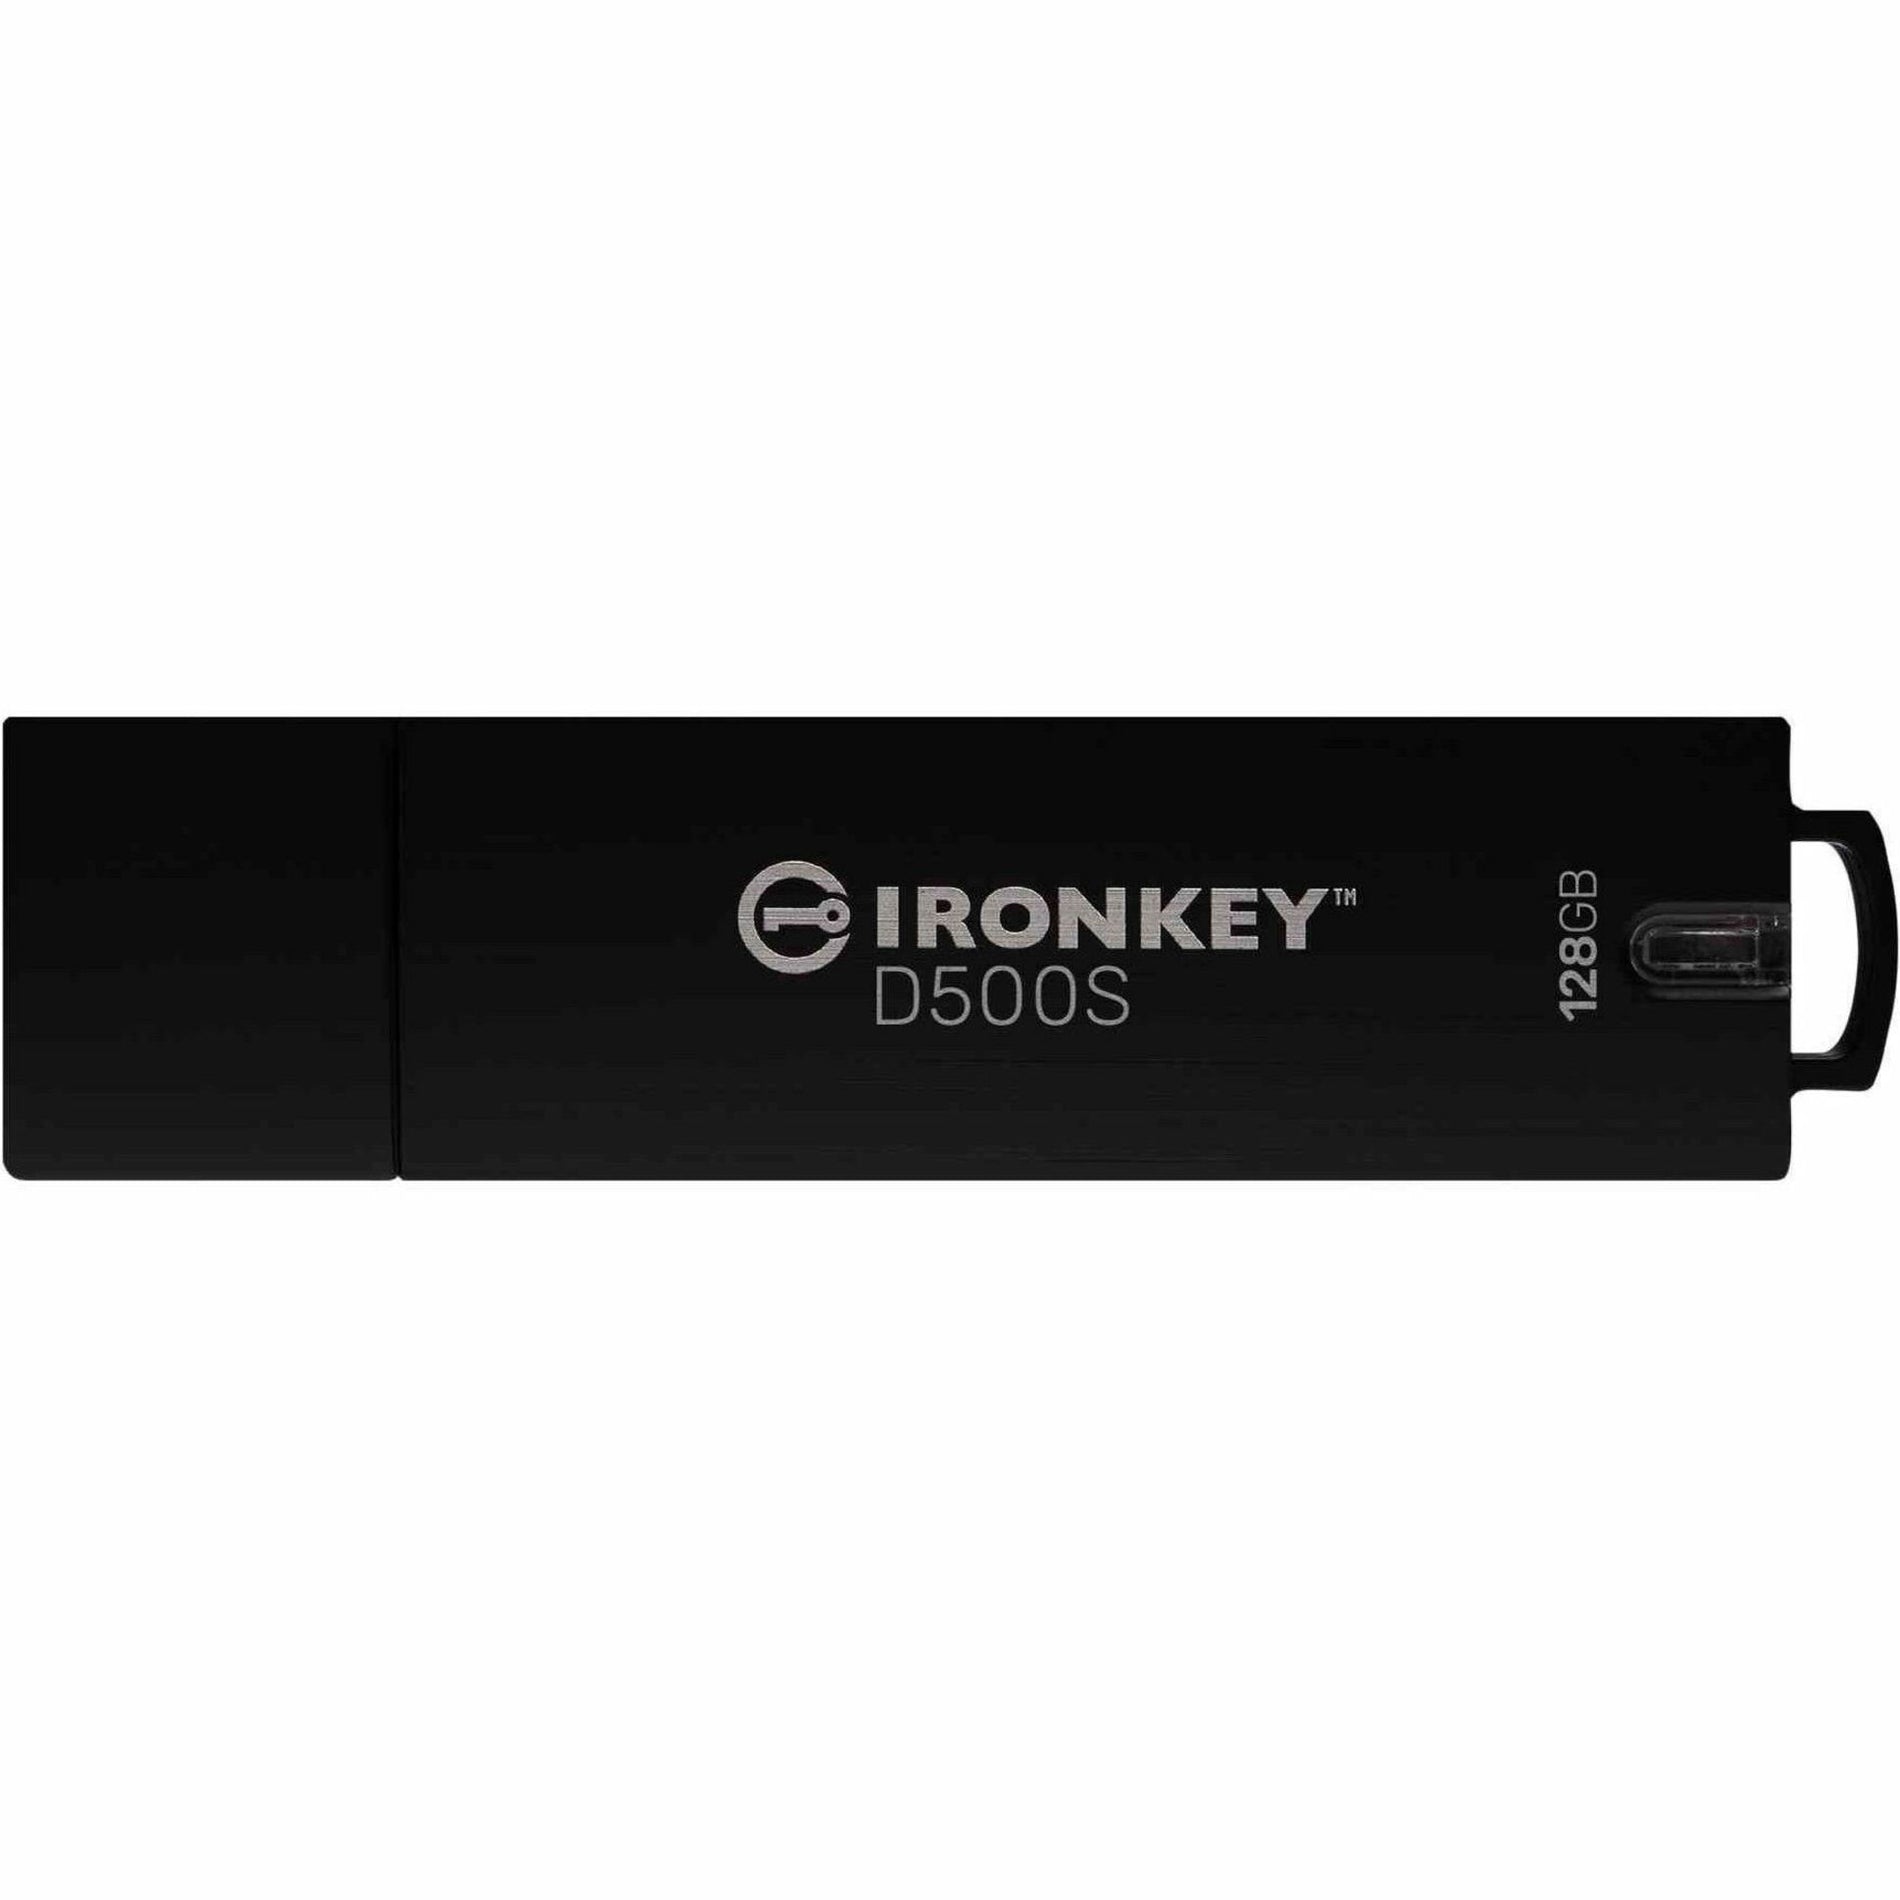 Kingston IKD500S/128GB IronKey D500S USB Flash Drive, 128GB Storage, Waterproof, Rugged Casing